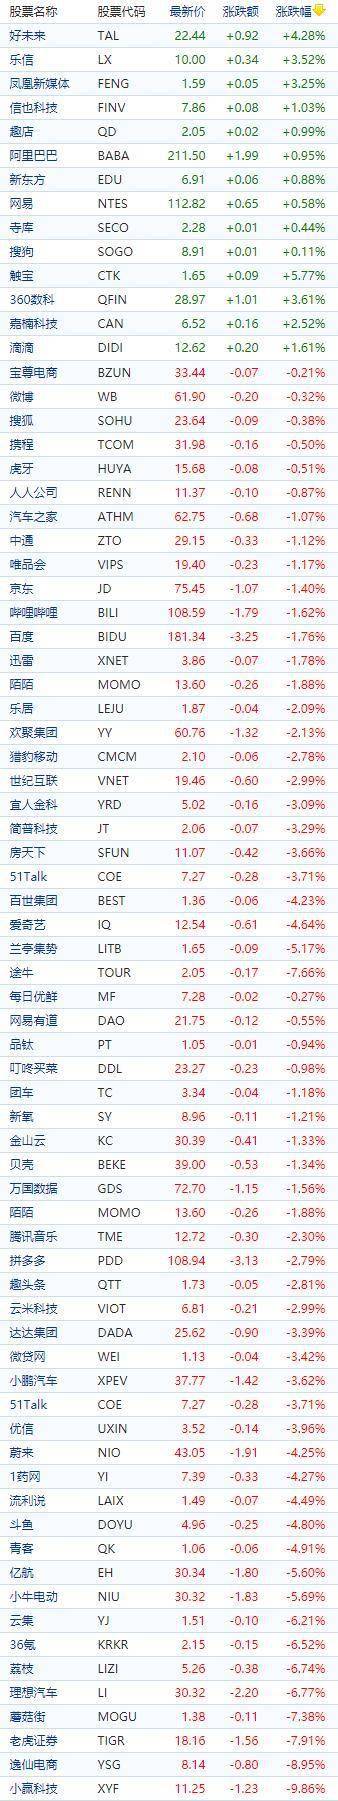 中国概念股周三收盘多数下跌 反之科技股多数上涨